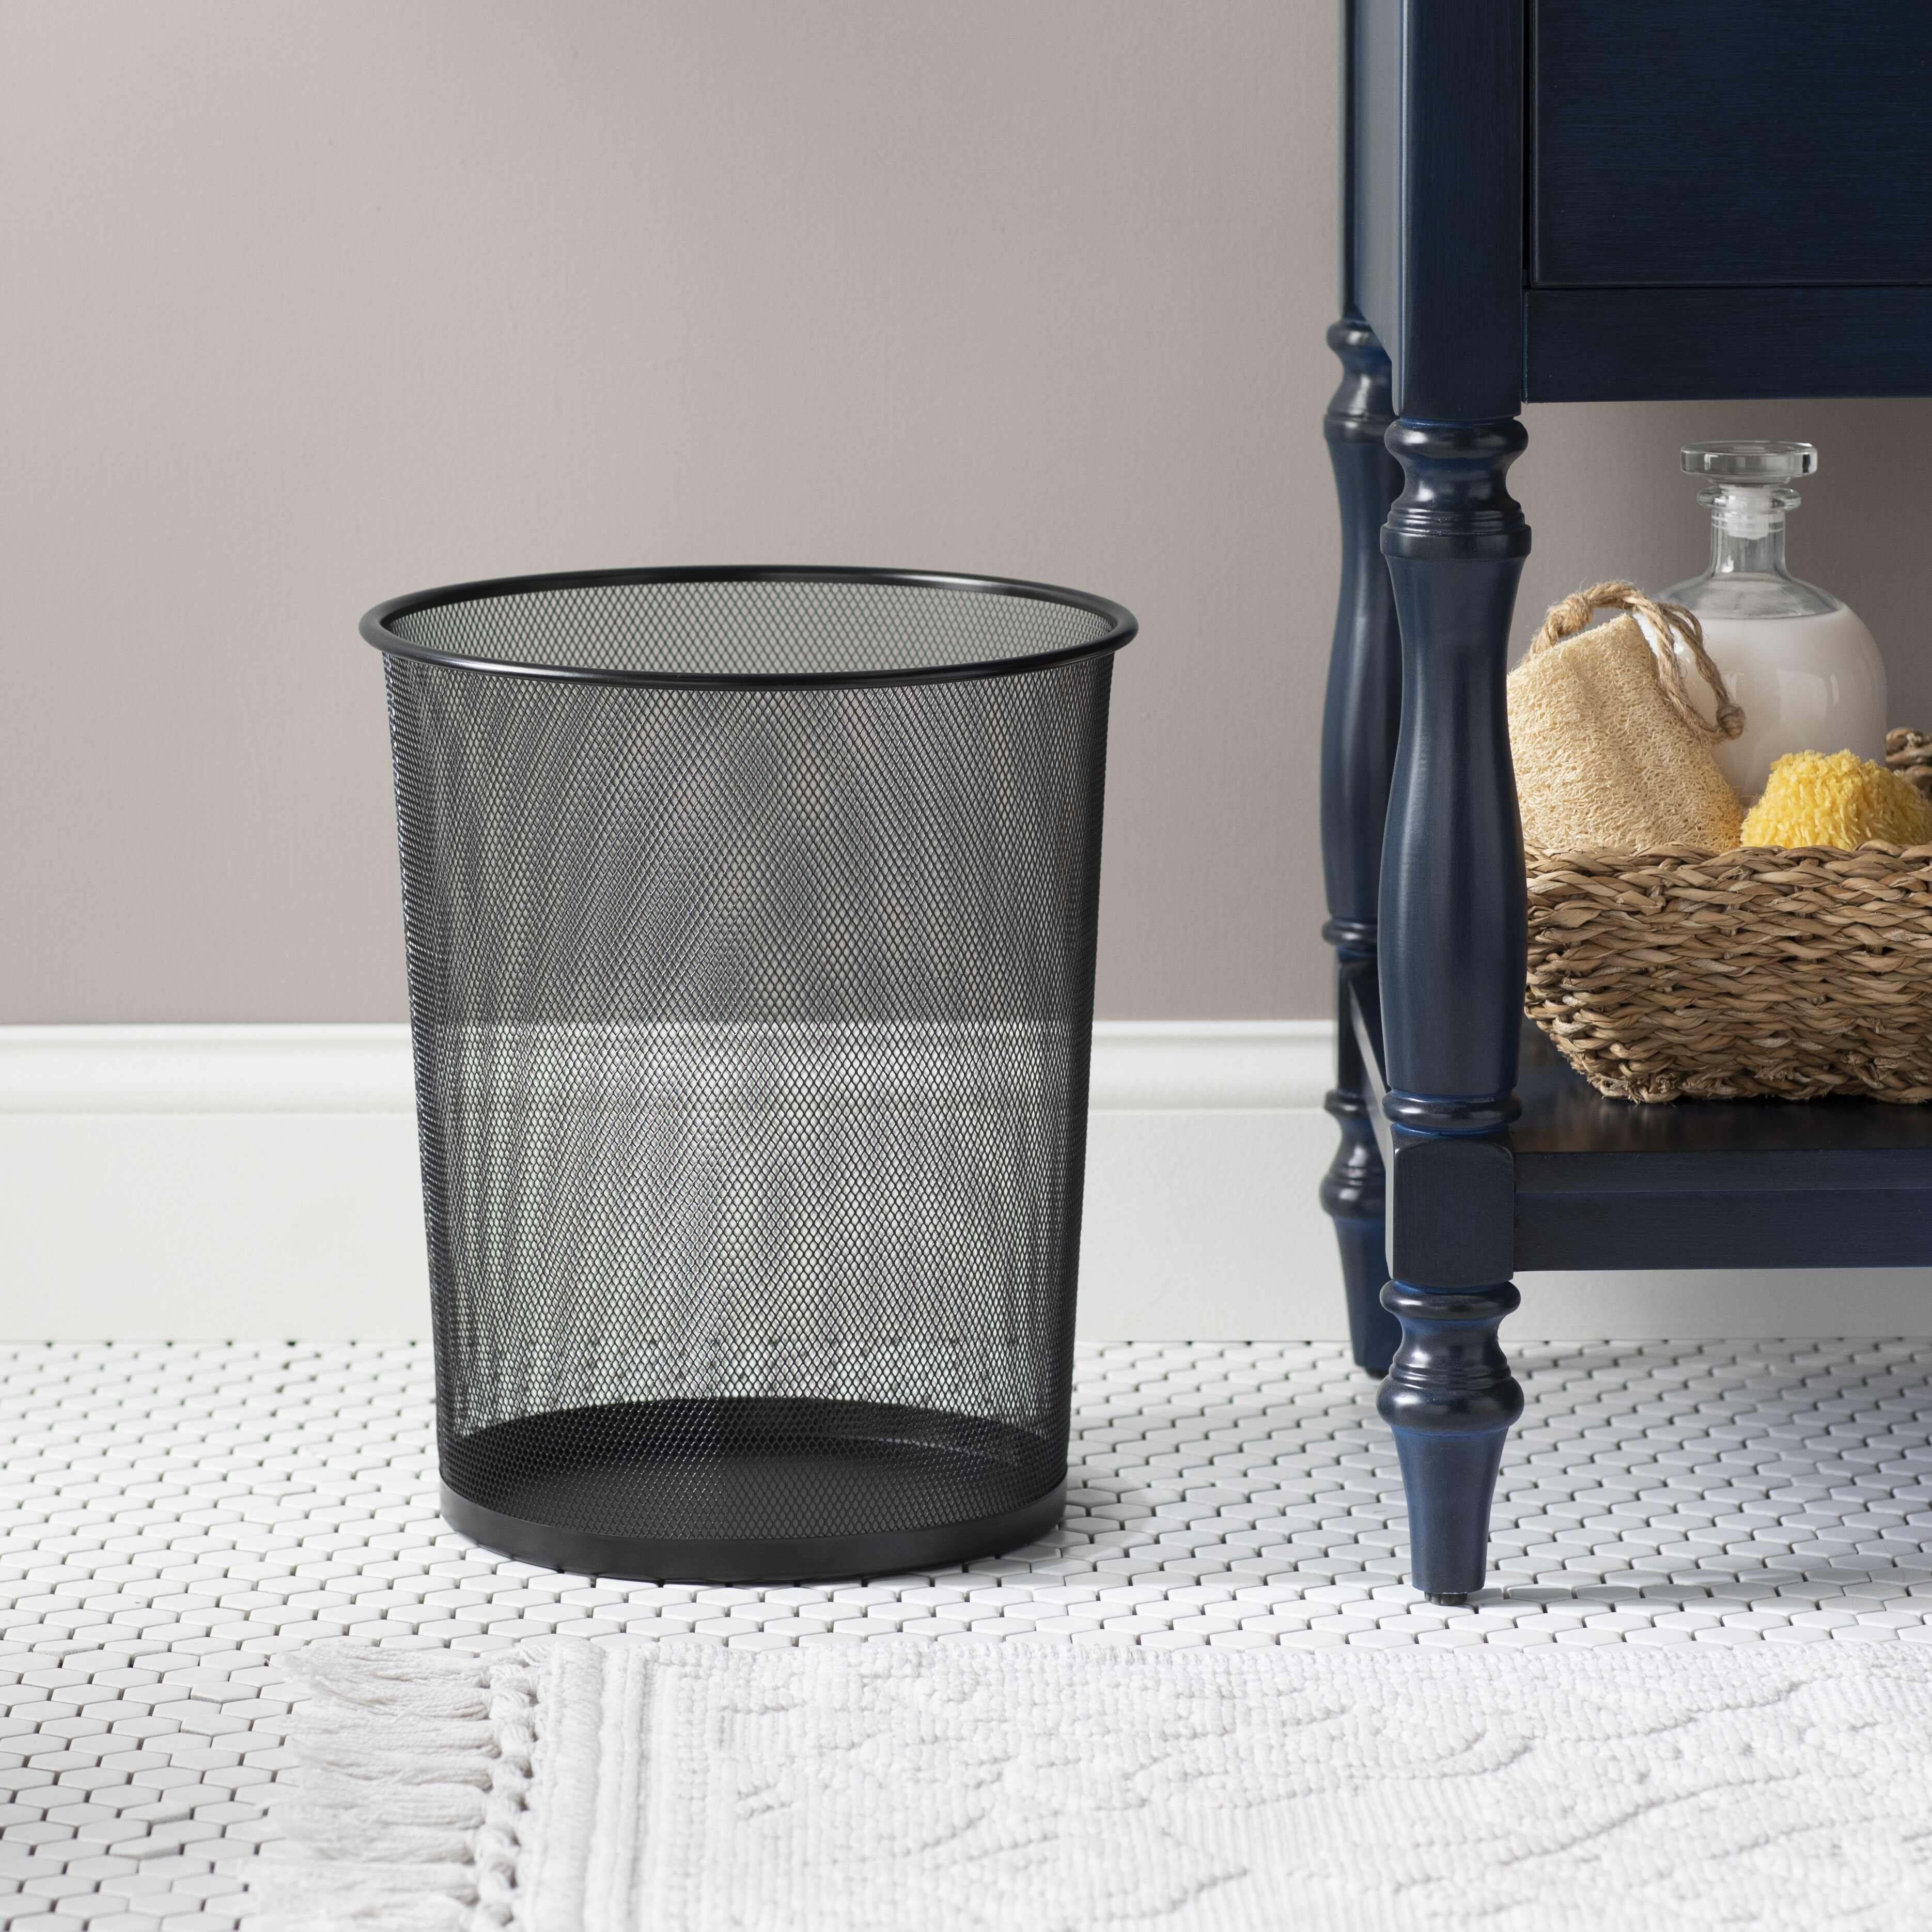 Desktop Garbage Basket Small Waste Bin Trash Can Table Roll Swing Lid Home FW 